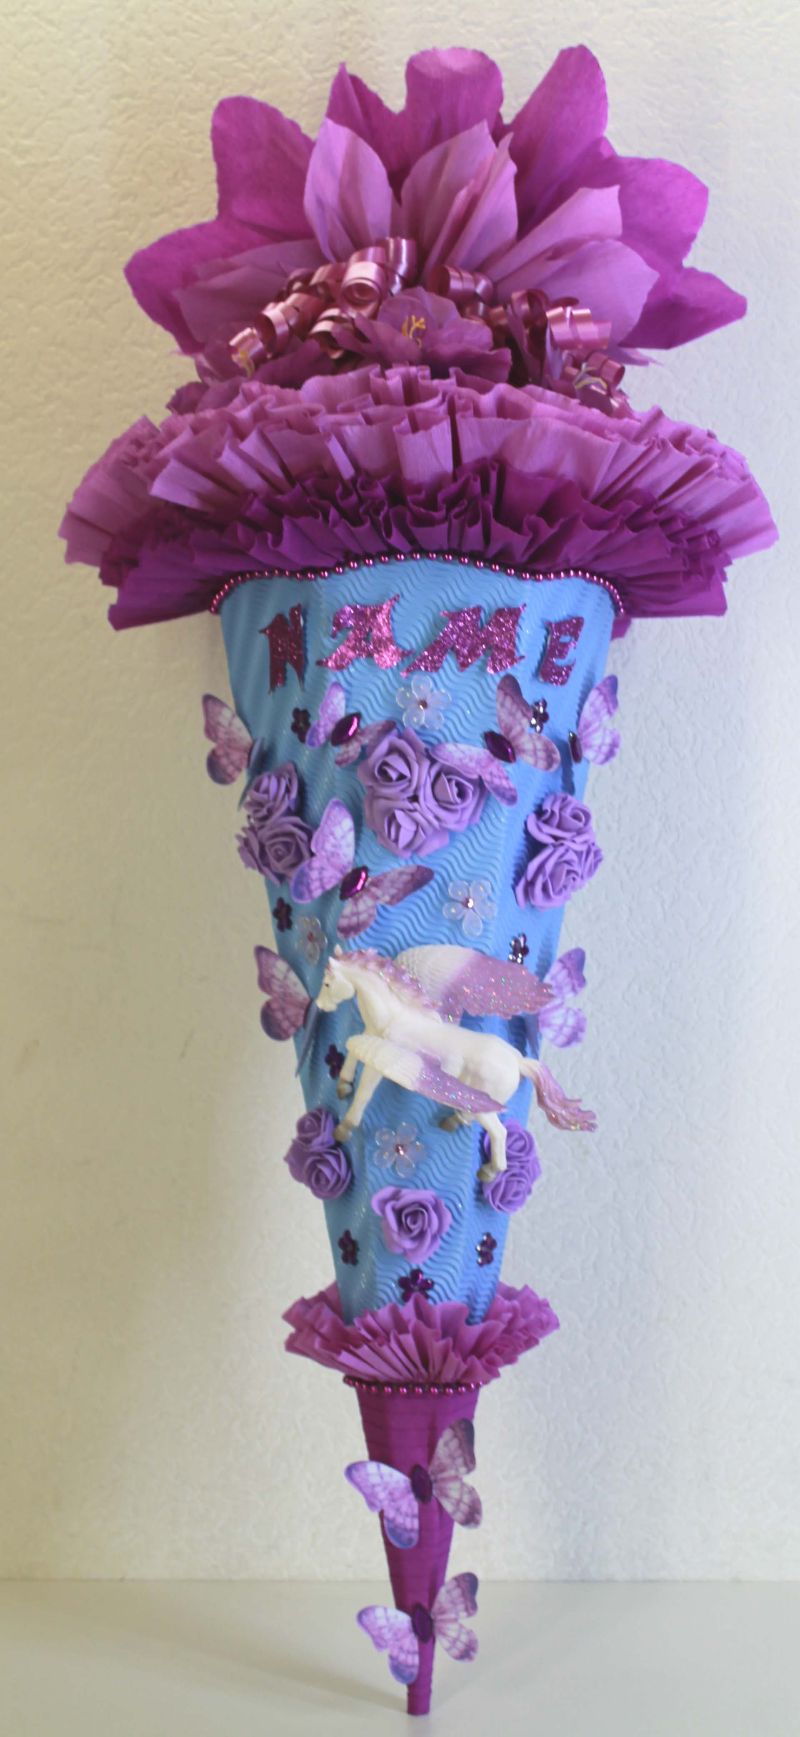  - Schultüte Zuckertüte PEGASUS Pferdchen Einhorn für Mädchen VERSANDBEREIT in eisblau violett lila